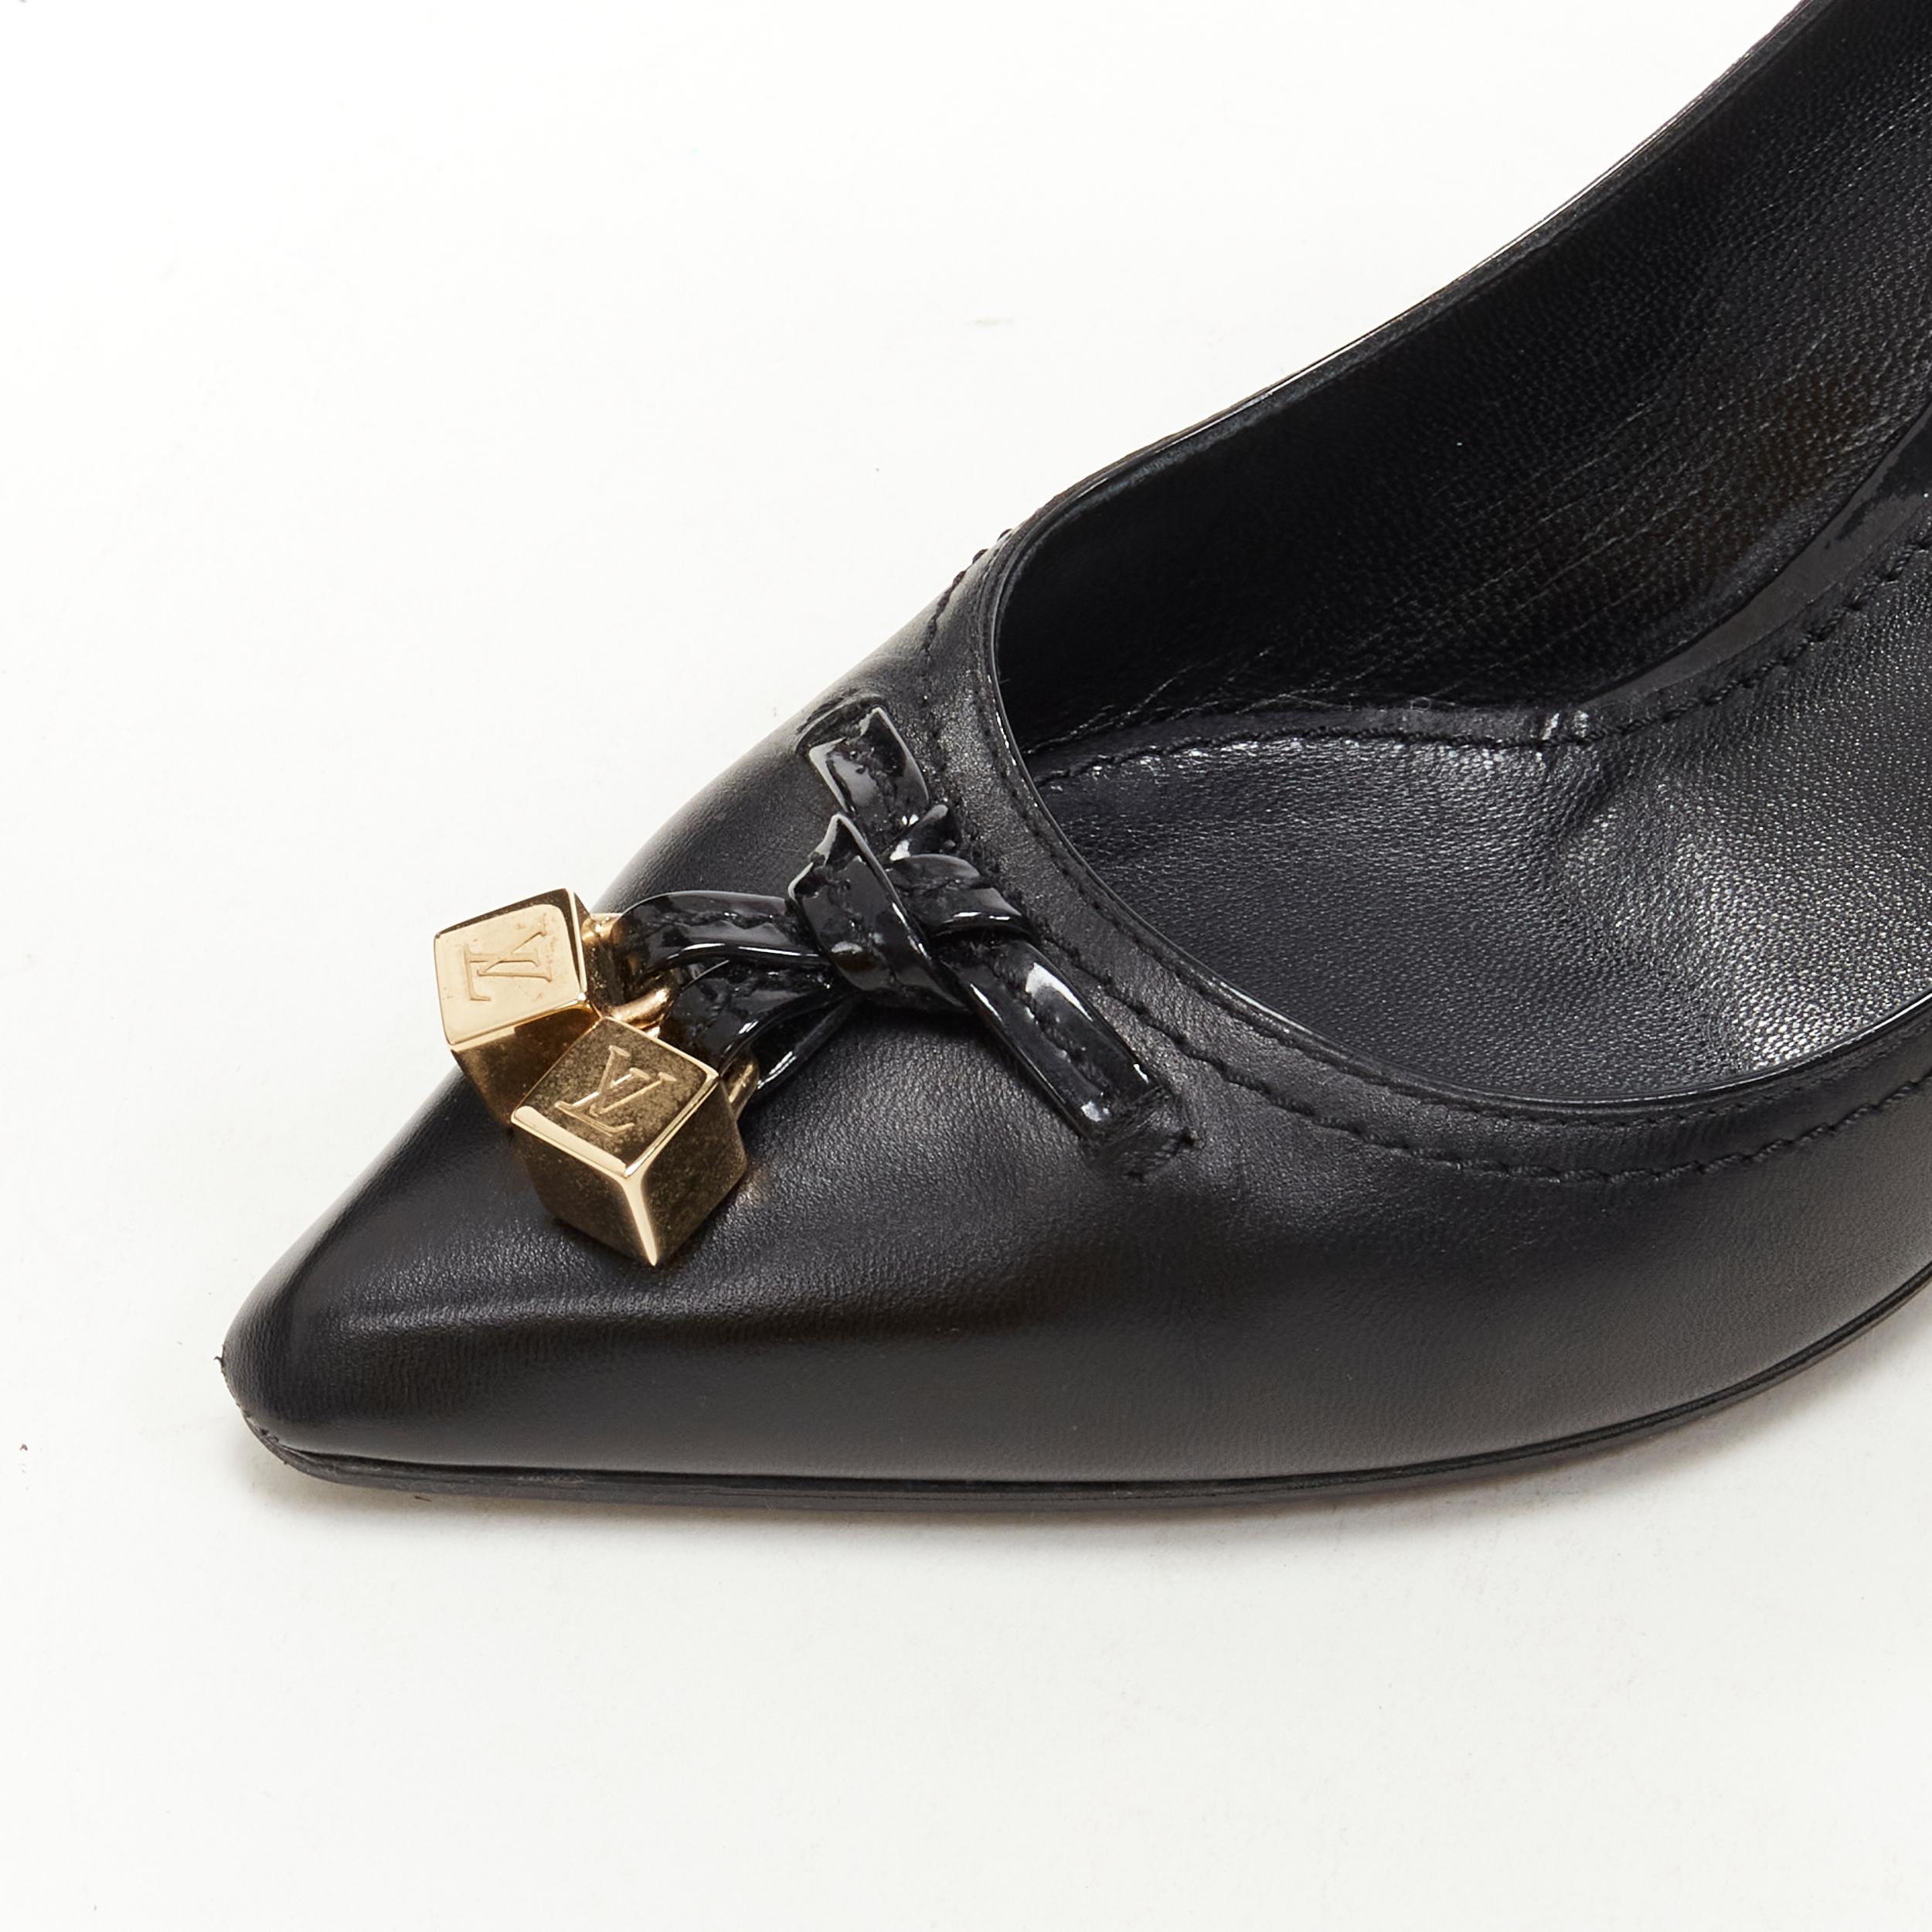 Black LOUIS VUITTON gold LV dice charm black leather mid heel pump EU36.5 For Sale